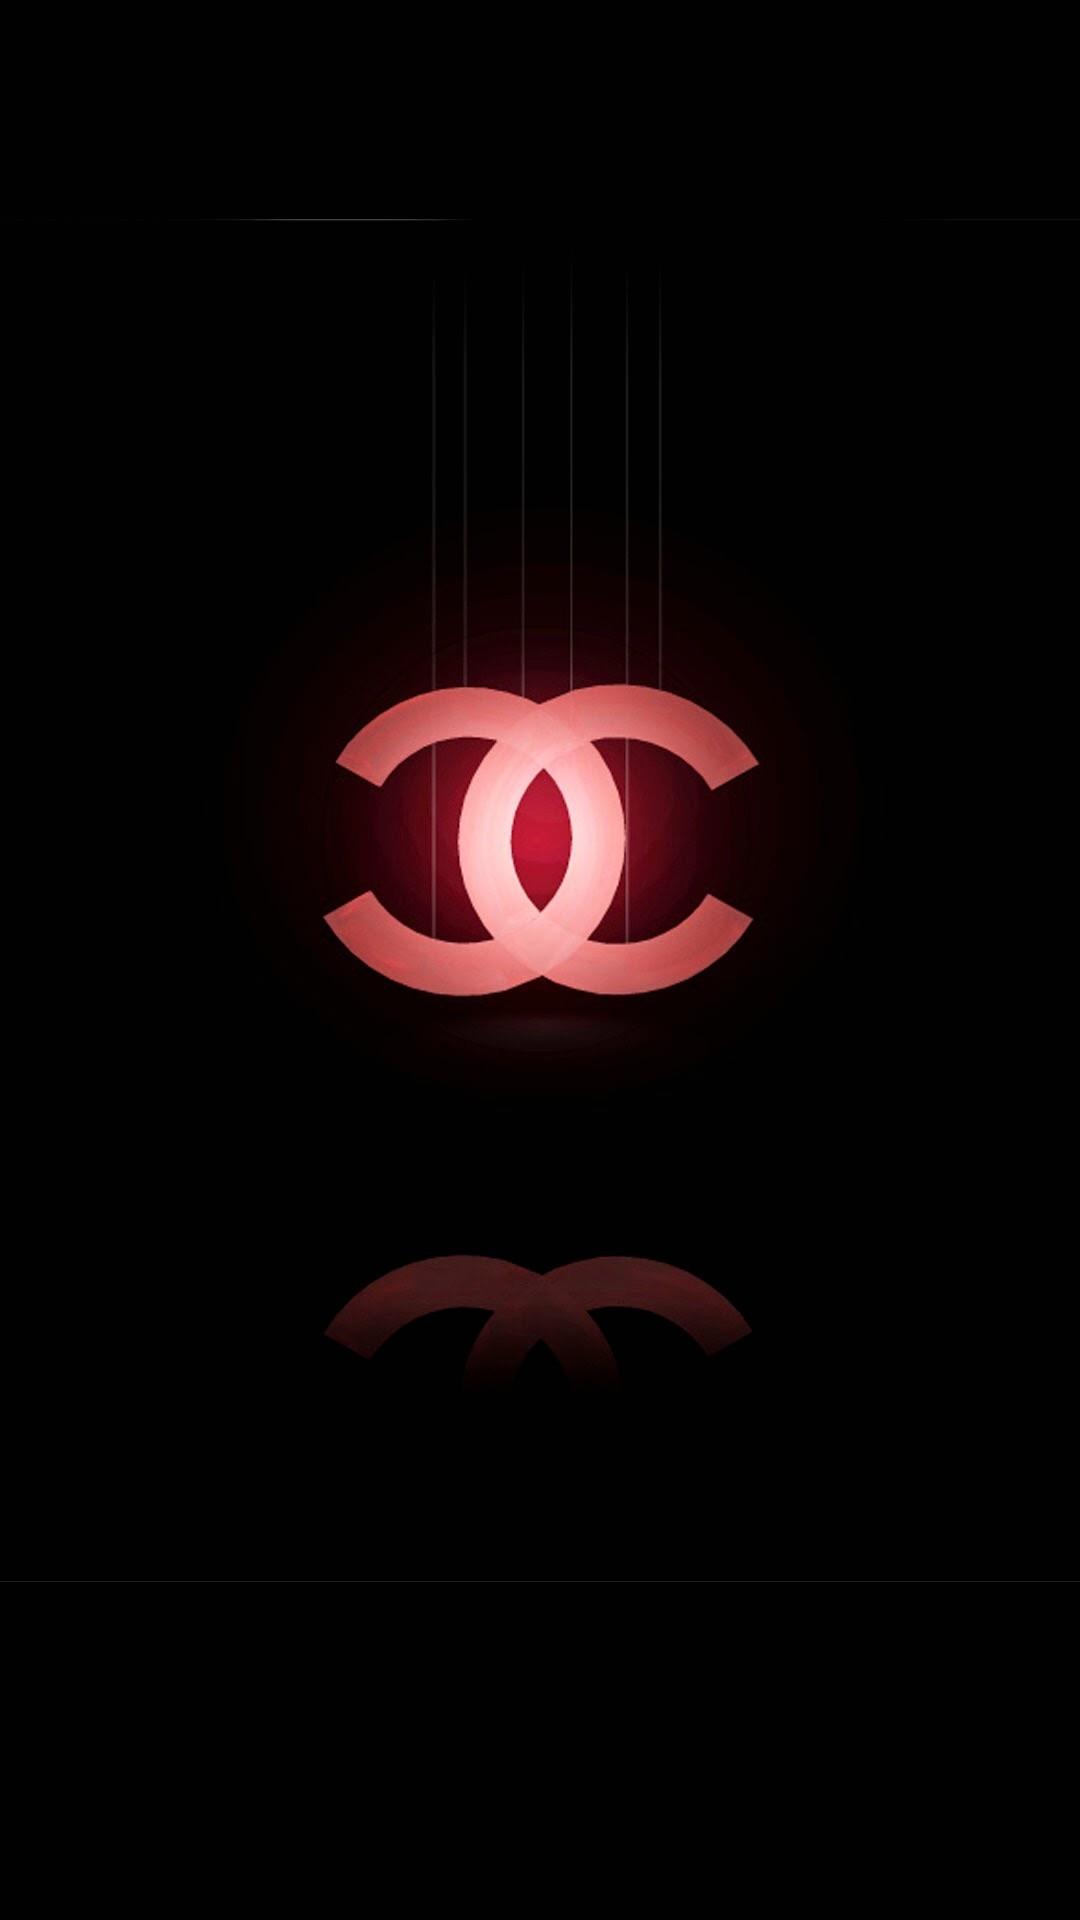 gucci logo iphone wallpaper